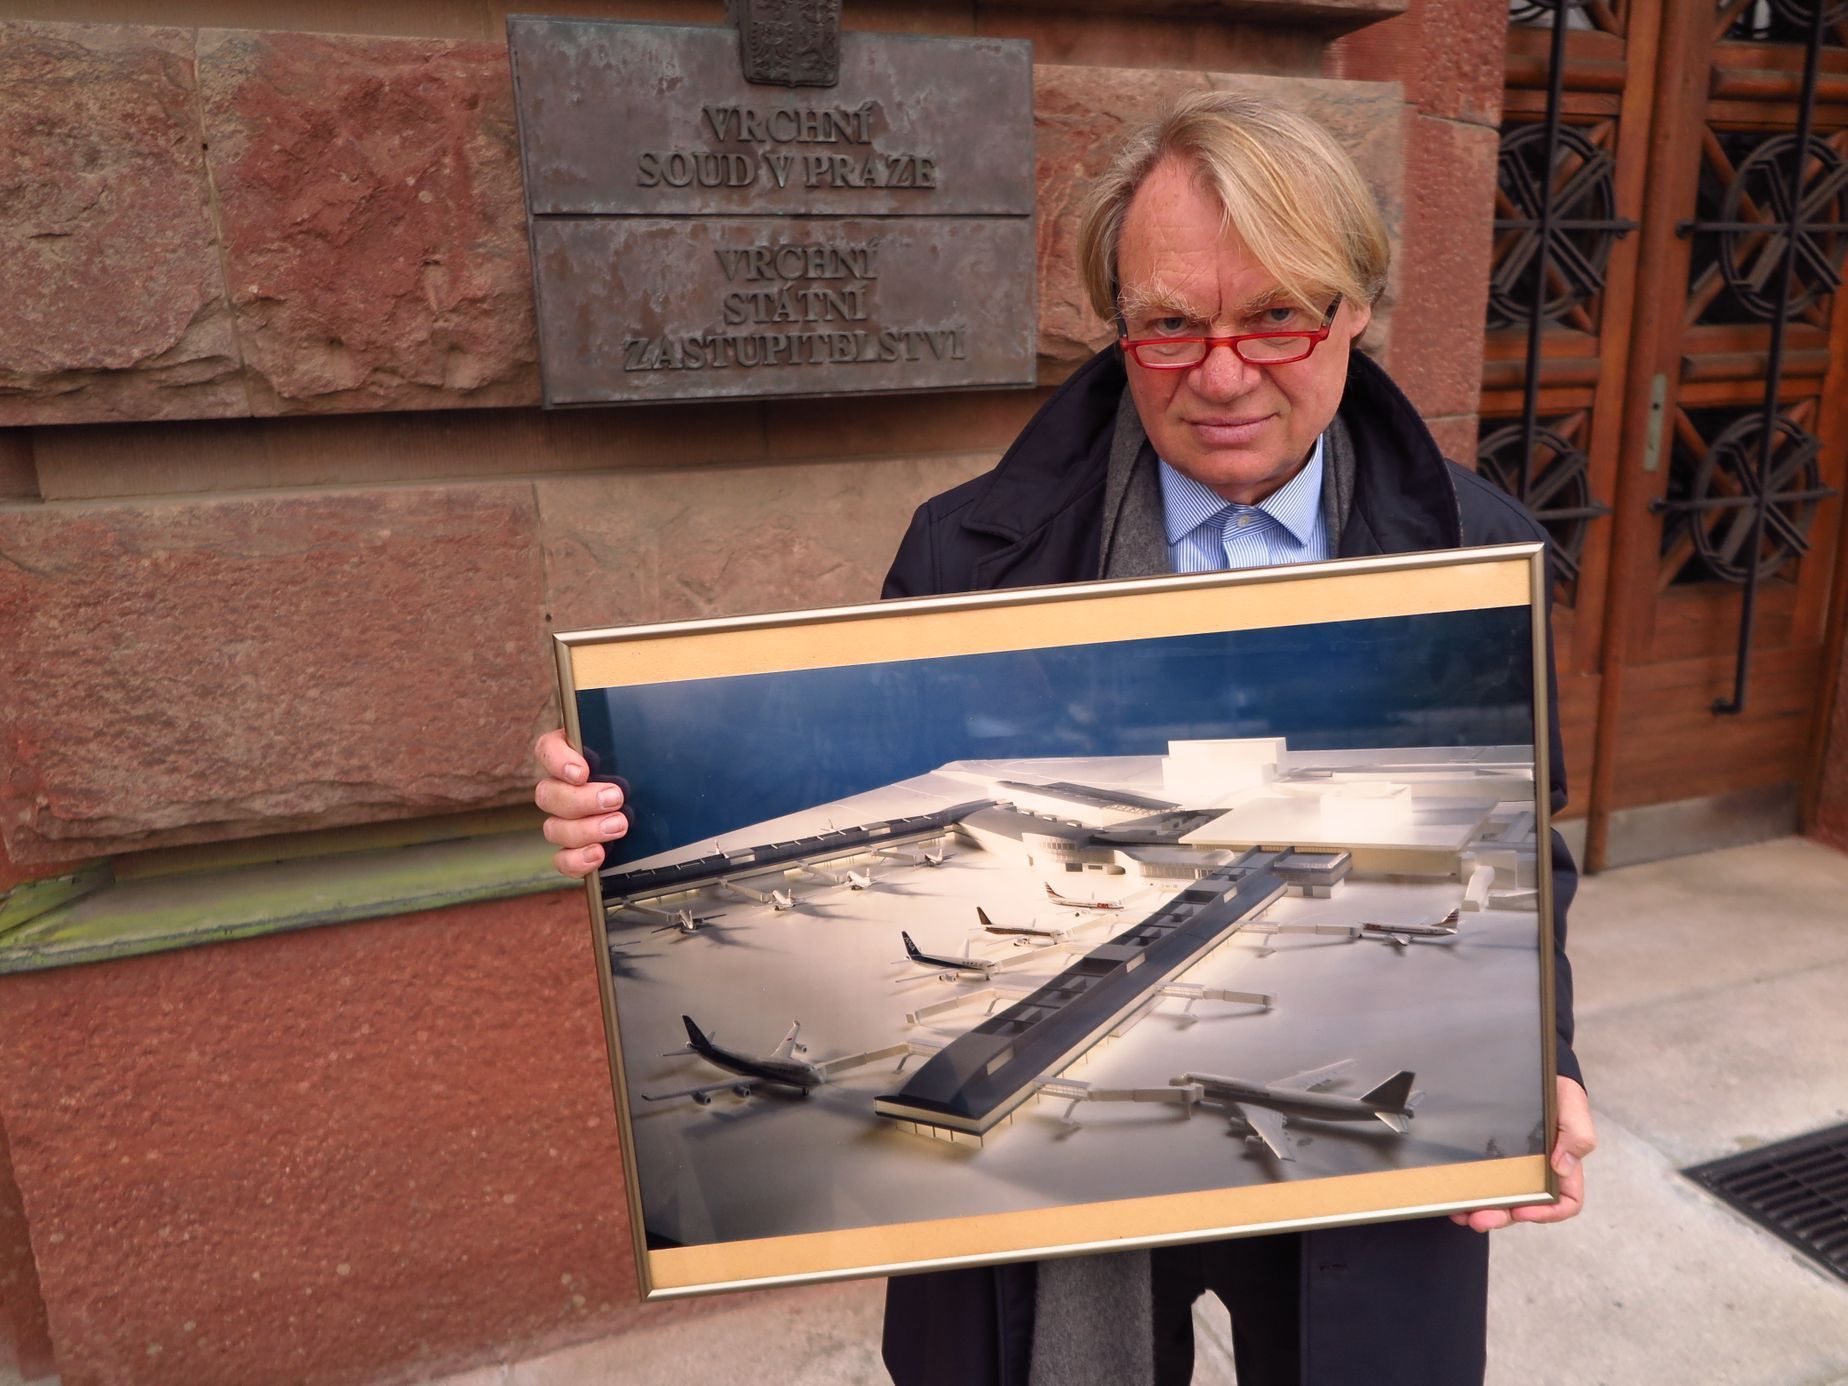 Architekt Petr Franta s modelem letiště, které naprojektoval s kolegou Michalem Brixem